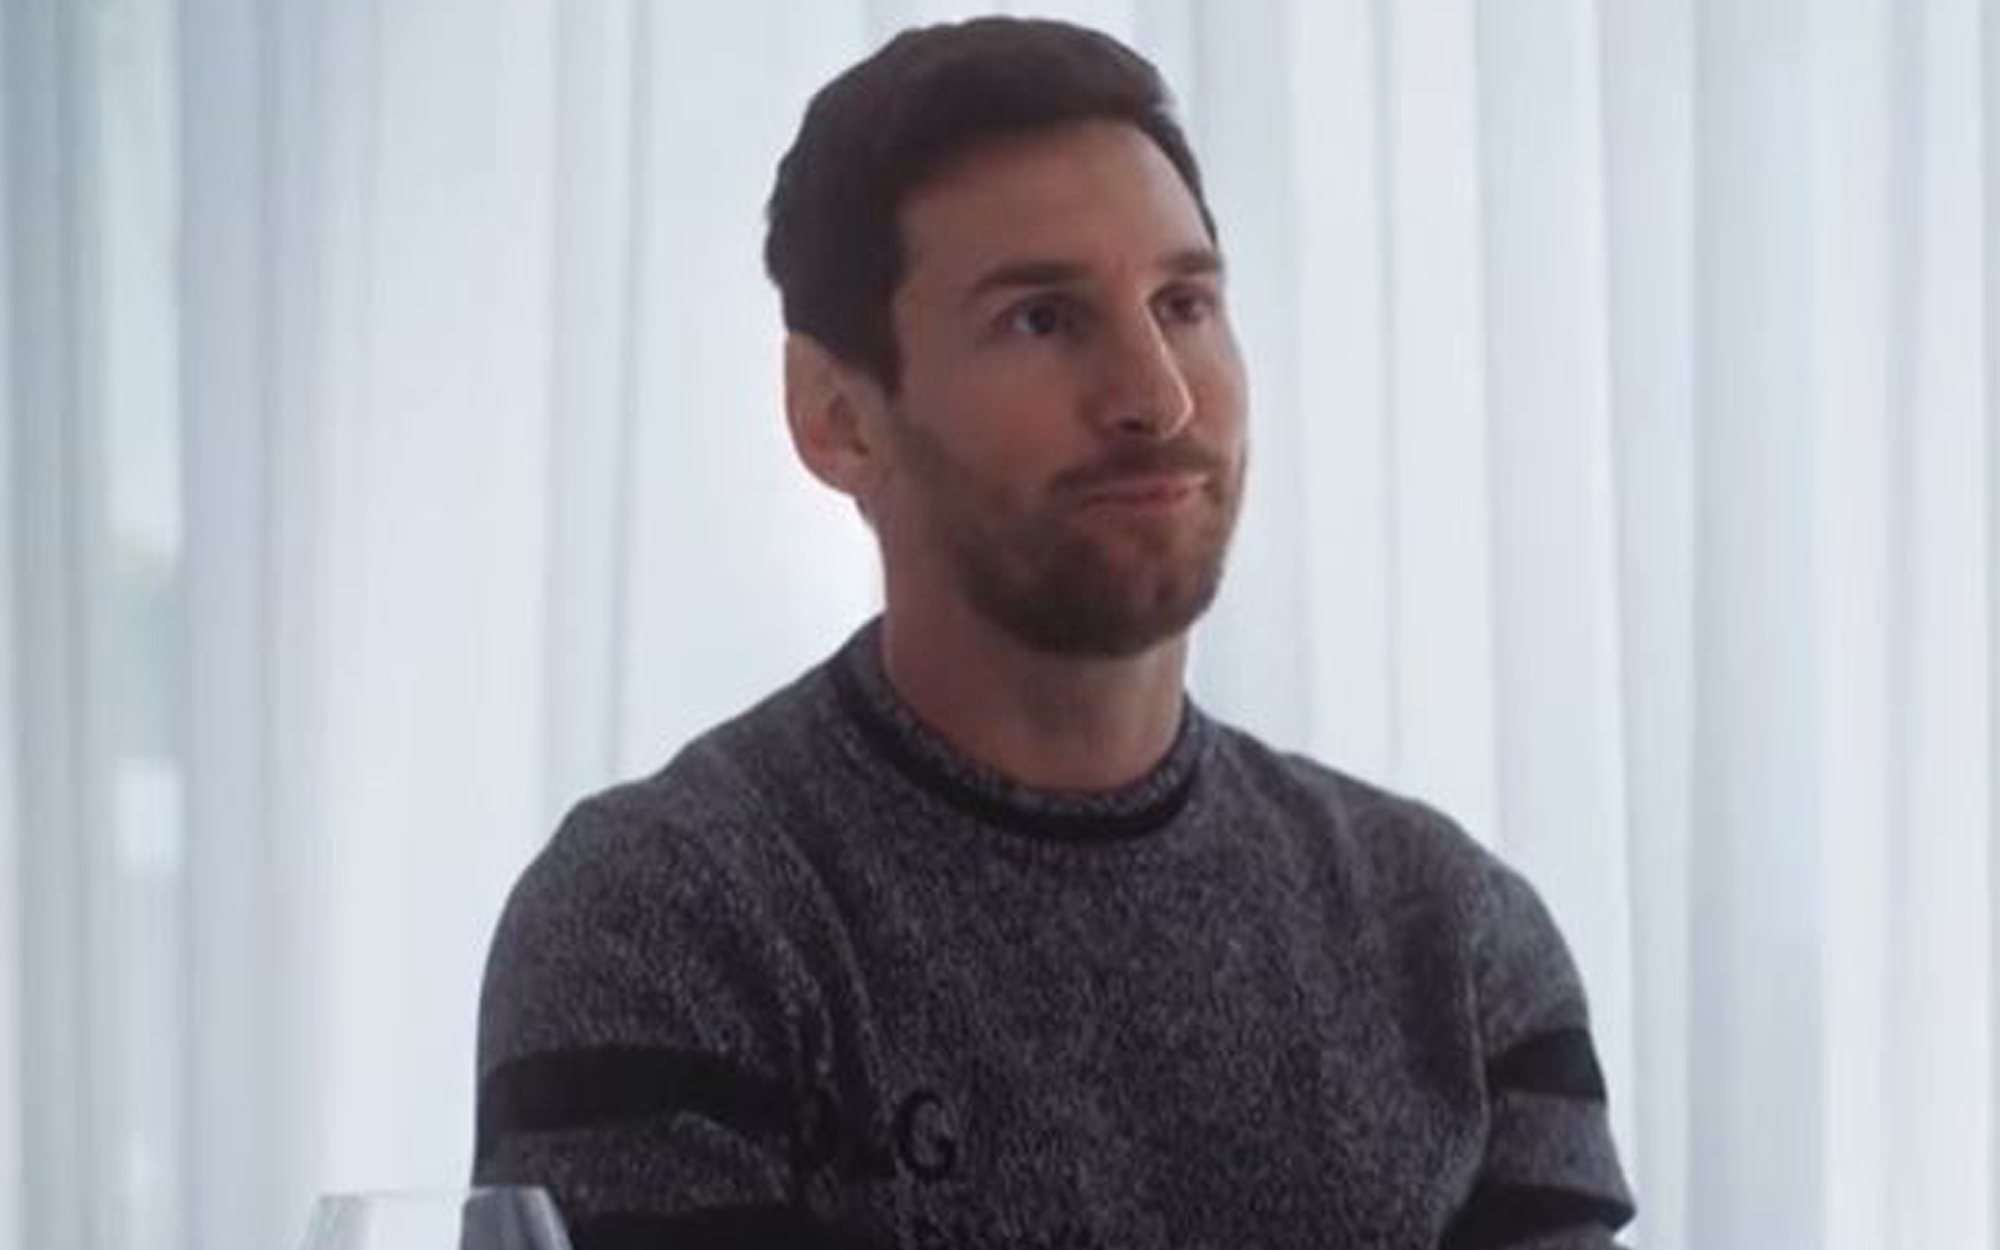 El alegato sobre salud mental de Messi con Évole: "Necesito ir al psicólogo, pero me cuesta dar el paso"